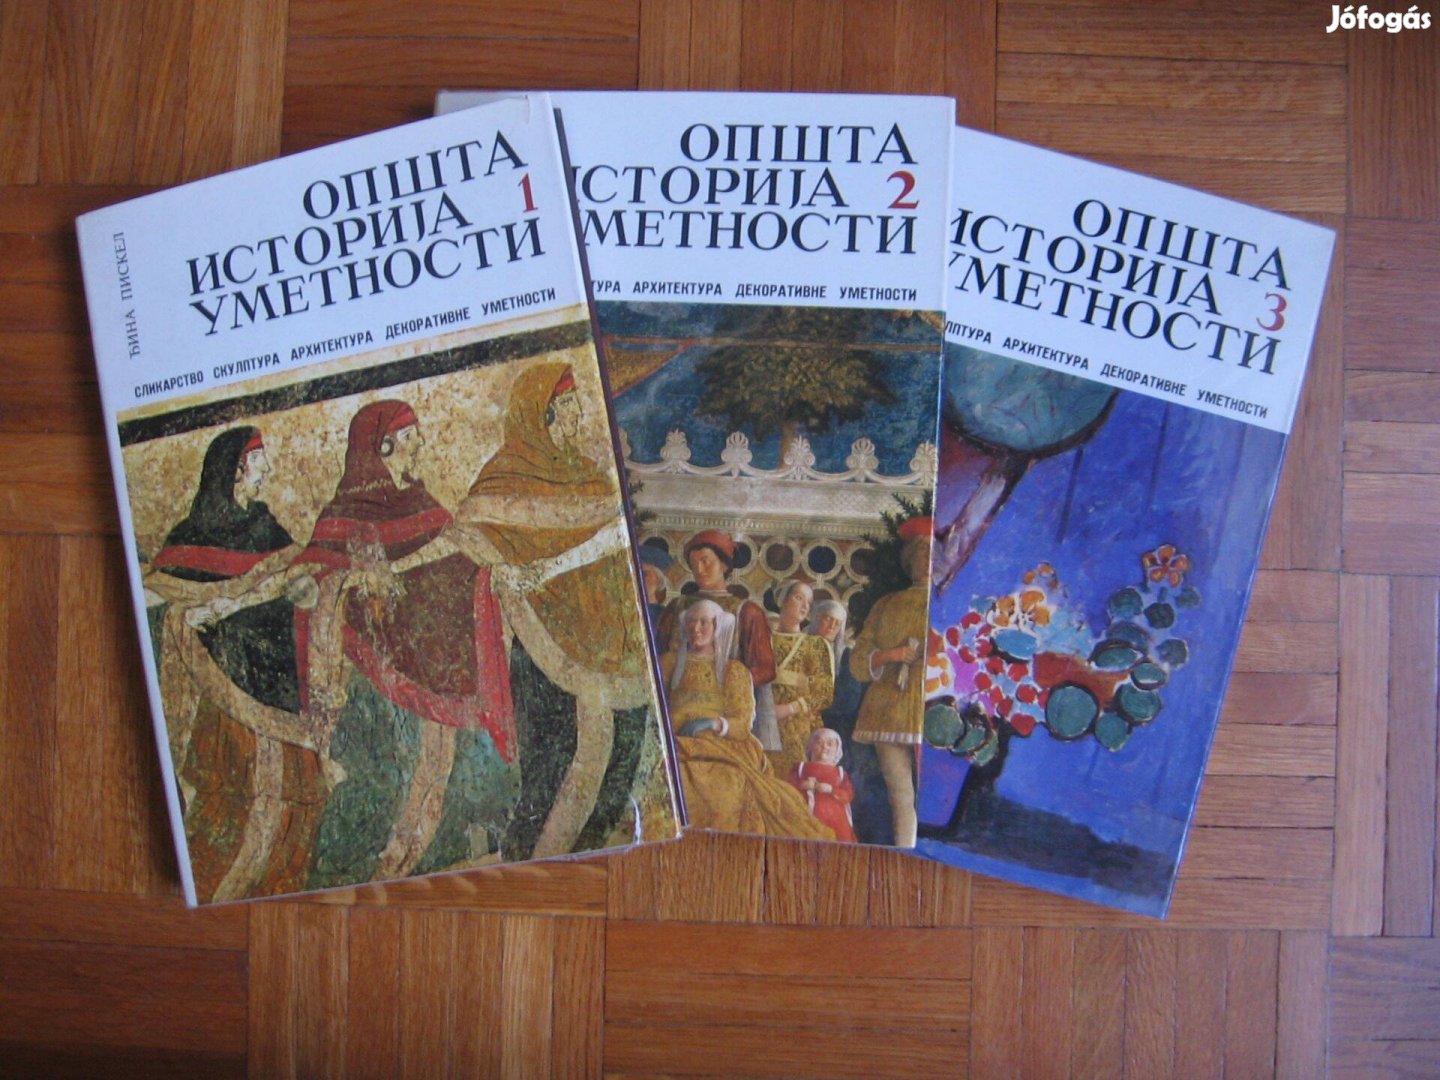 Általános művészettörténet, 3 kötetes könyv, szerb nyelvű